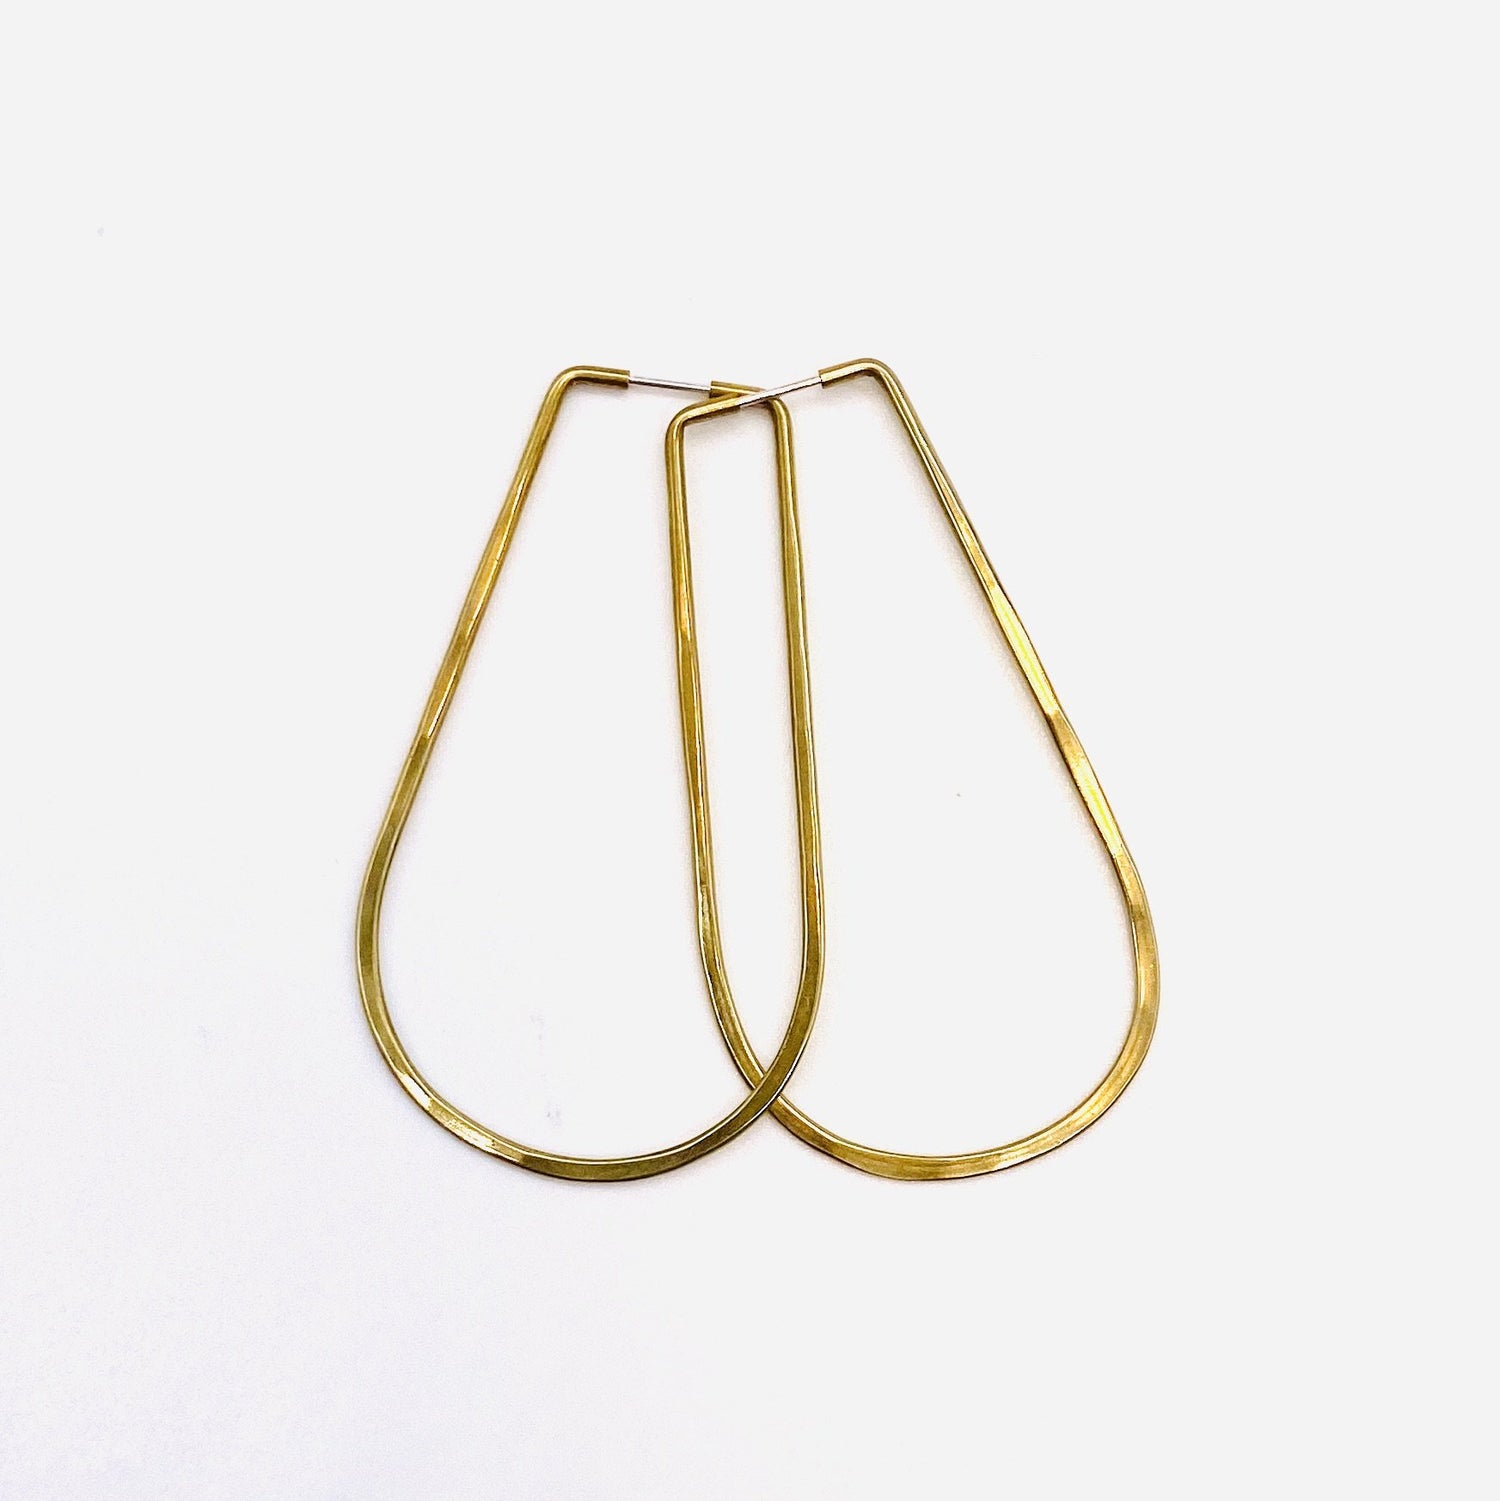 Brass geometric hoop earrings in una small shape.